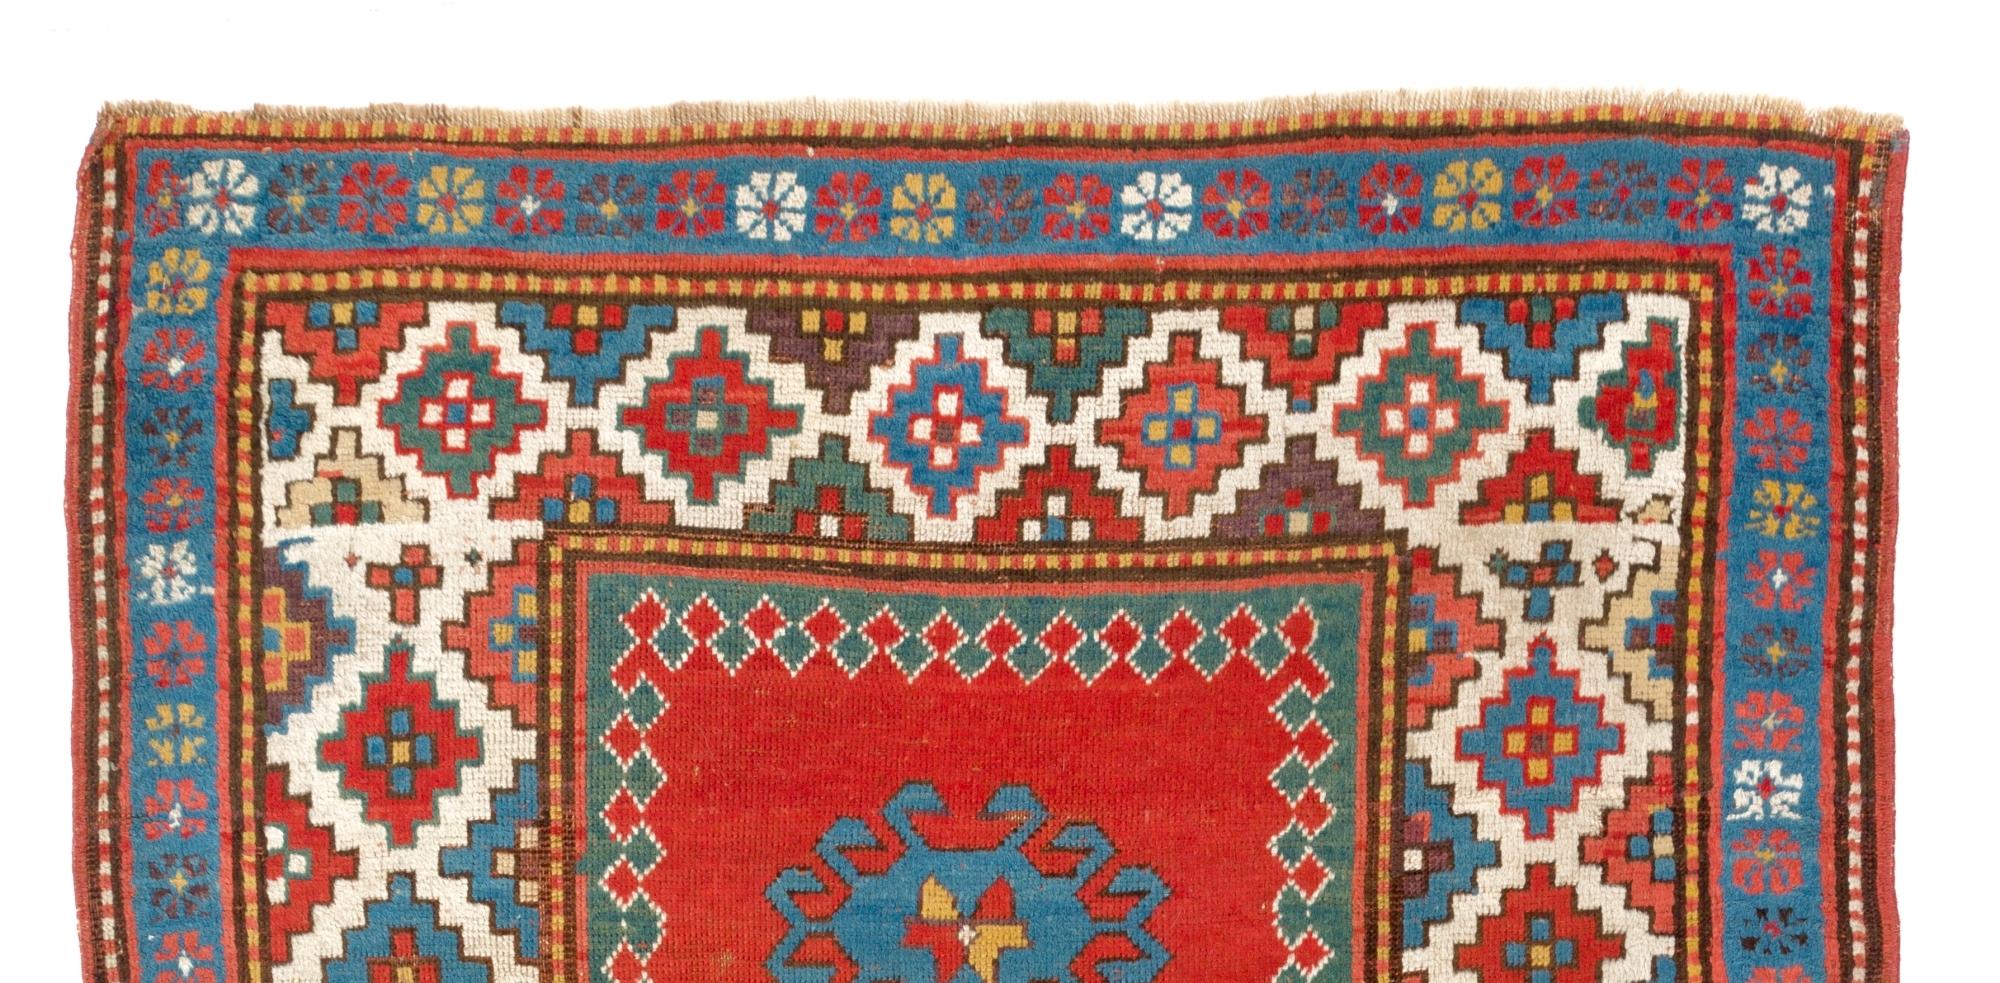 Ancien tapis caucasien Bordjalou Kazak, vers 1880. Mesures : 4 x 5.8 ft.
Très bon état, entièrement d'origine. 
100% laine, teintures naturelles.